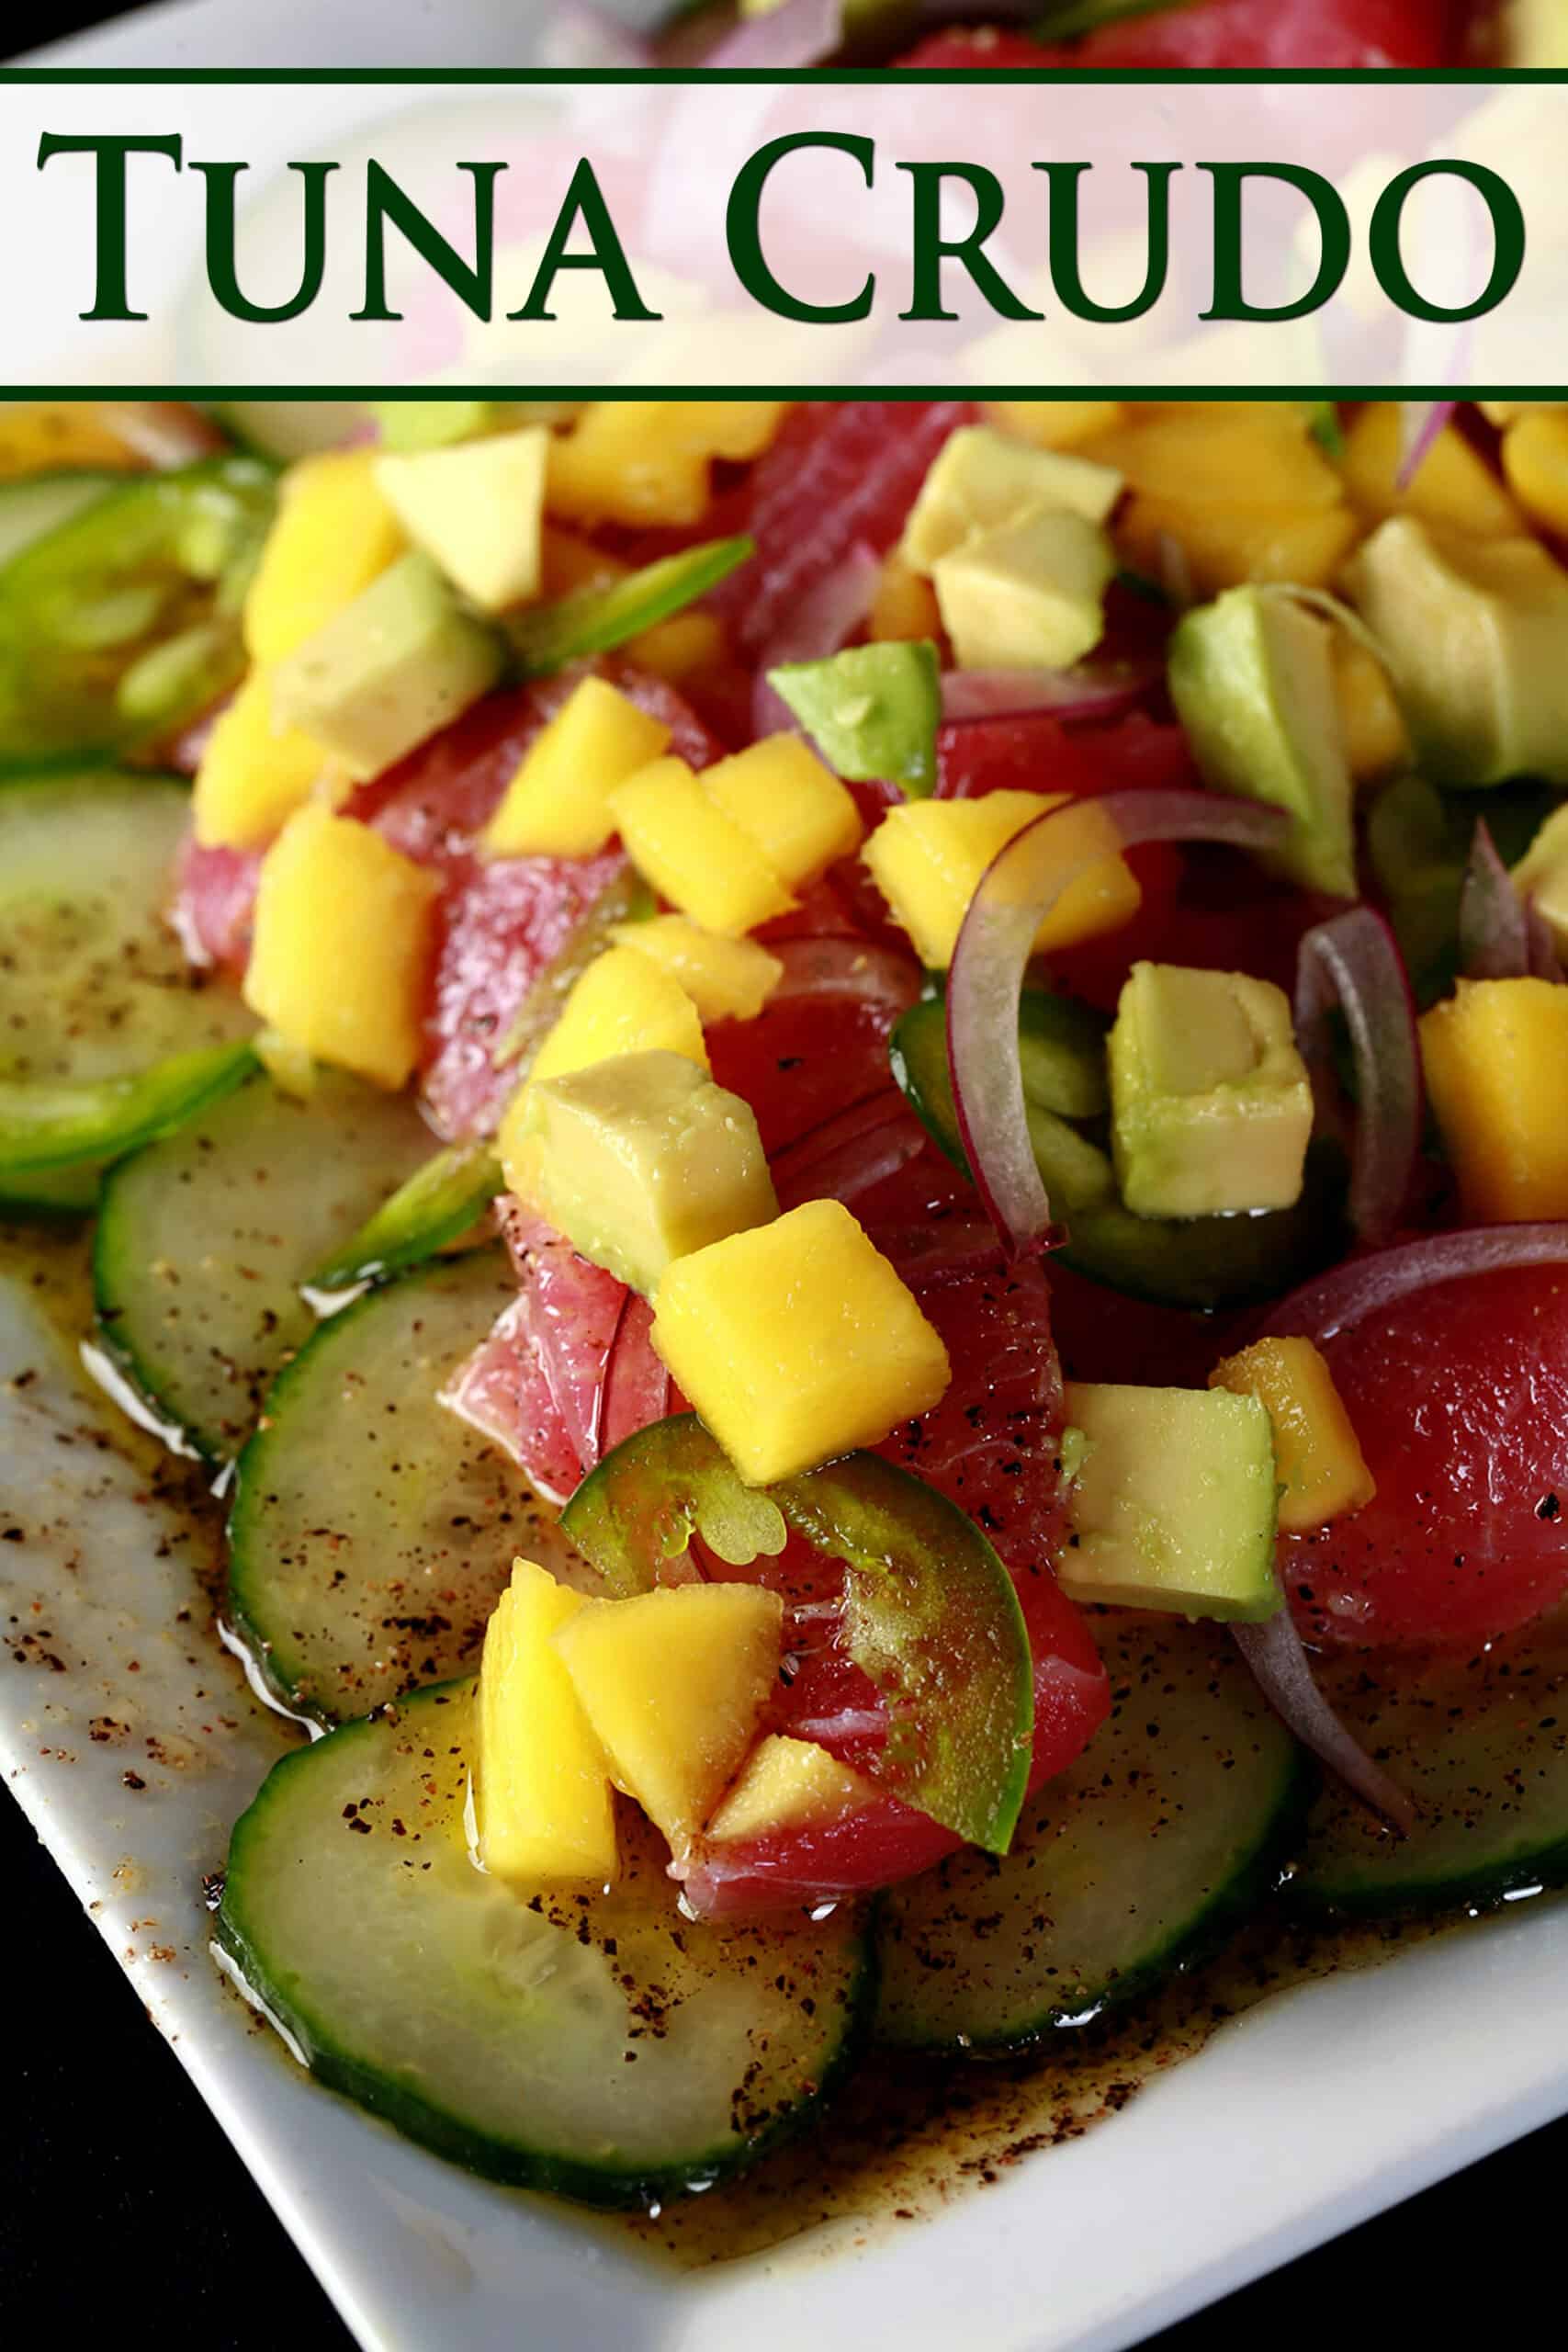 A close up photo of ahi tuna crudo, with mango, avocado, jalapenos, and a citrus vinaigrette, served over cucumber slices.